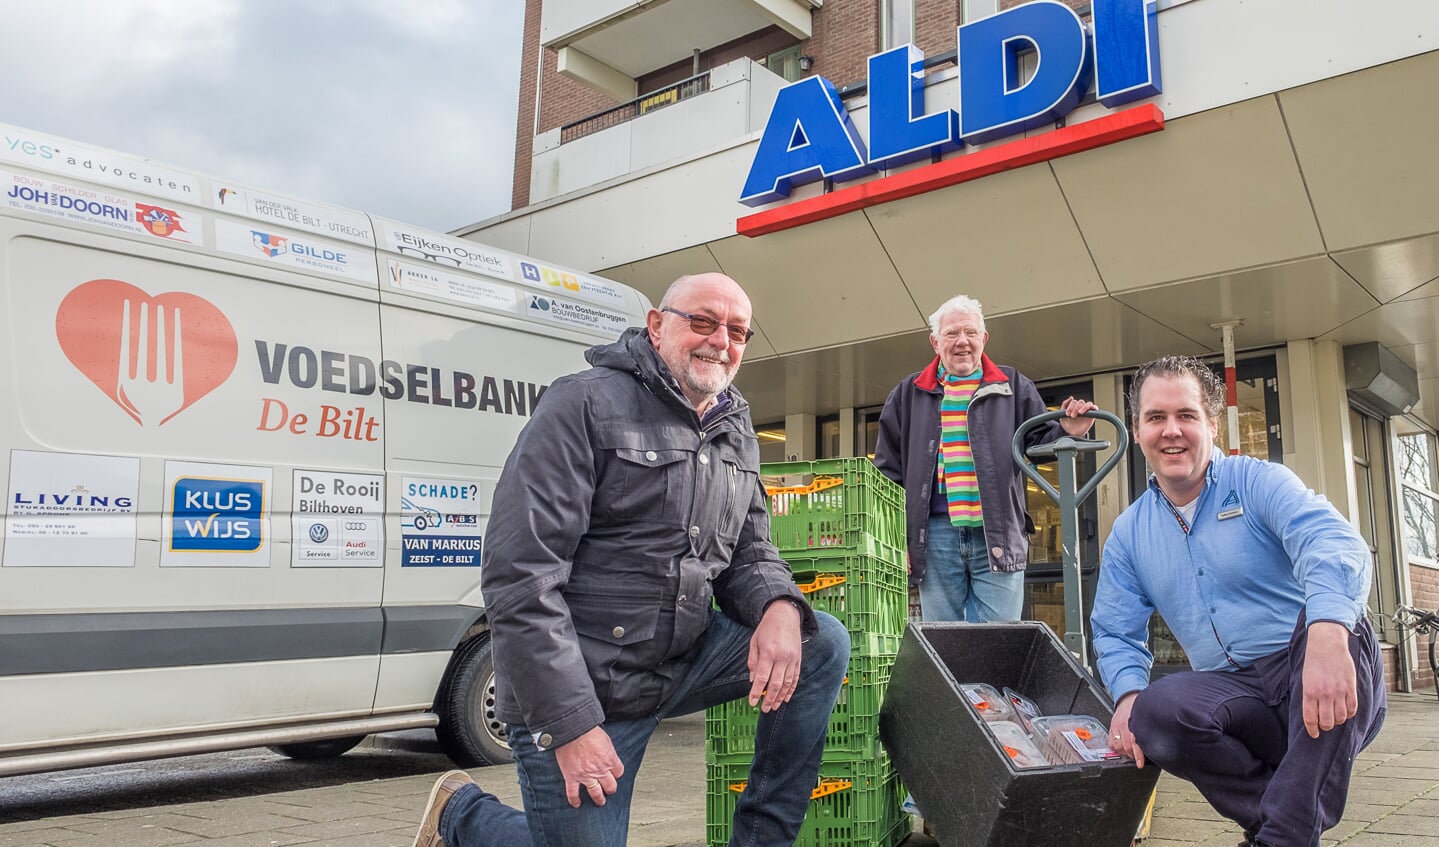 Alfred en Lucas Voedselbank De Bilt en Tjalling filiaalmanager Aldi De Bilt. 